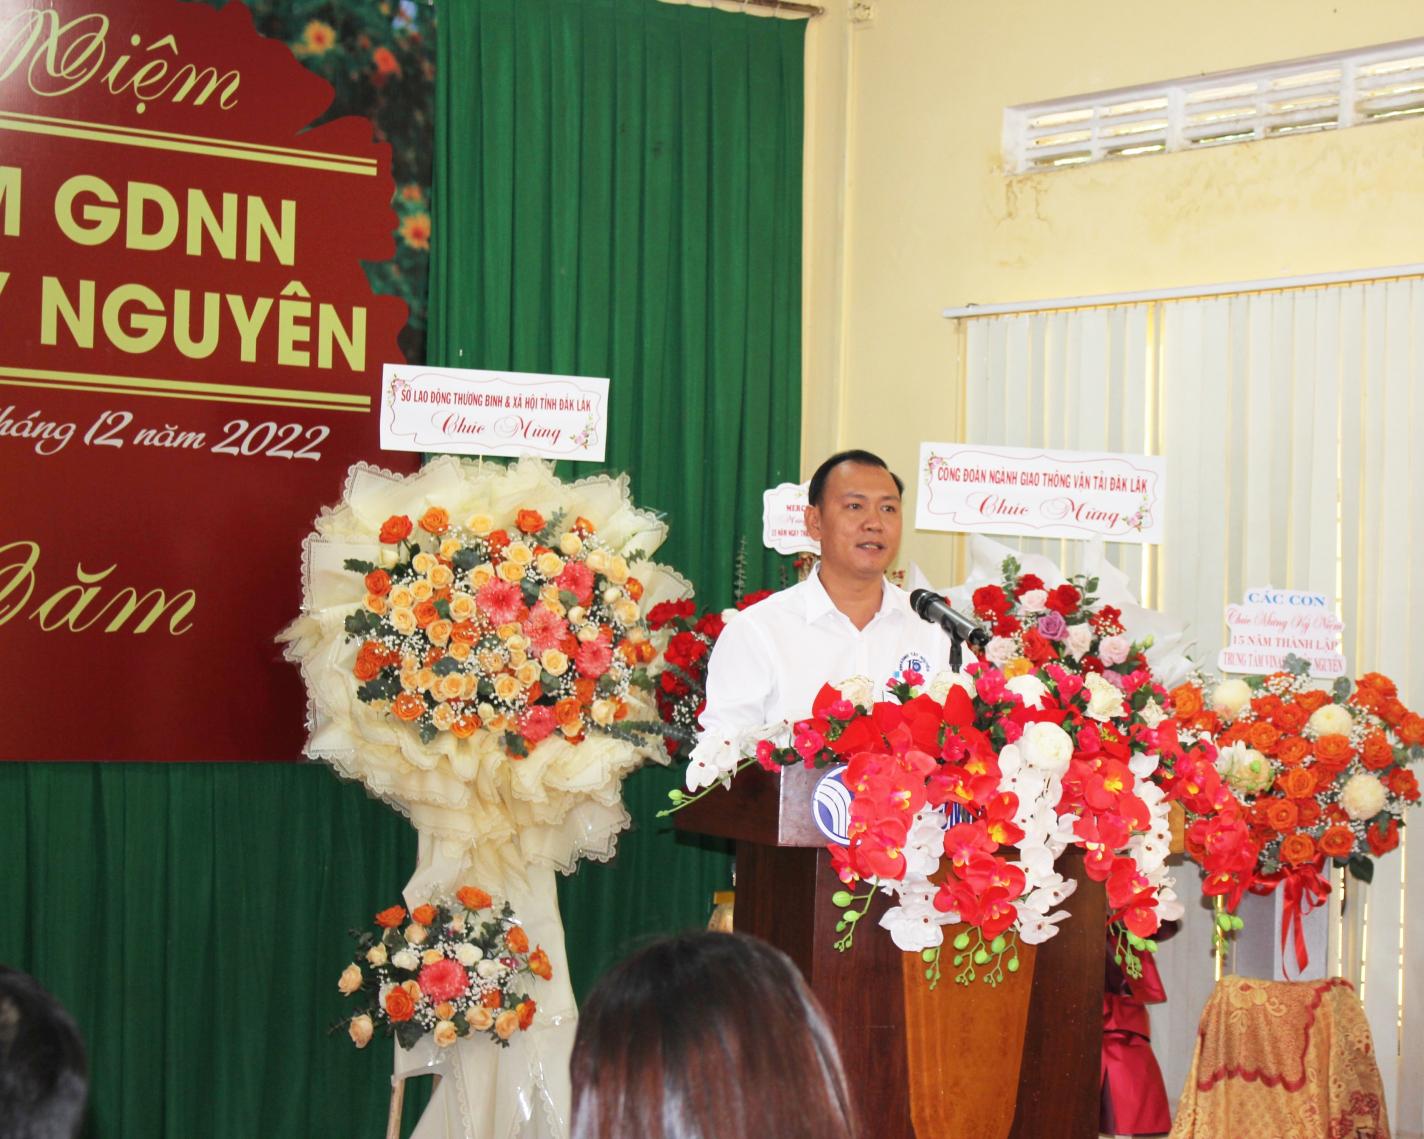 Thầy Trần Xuân Hoàng Vinh đại diện cho những giáo viên đã gắn bó lâu năm với TT GDNN VINASME Tây Nguyên phát biểu ý kiến.